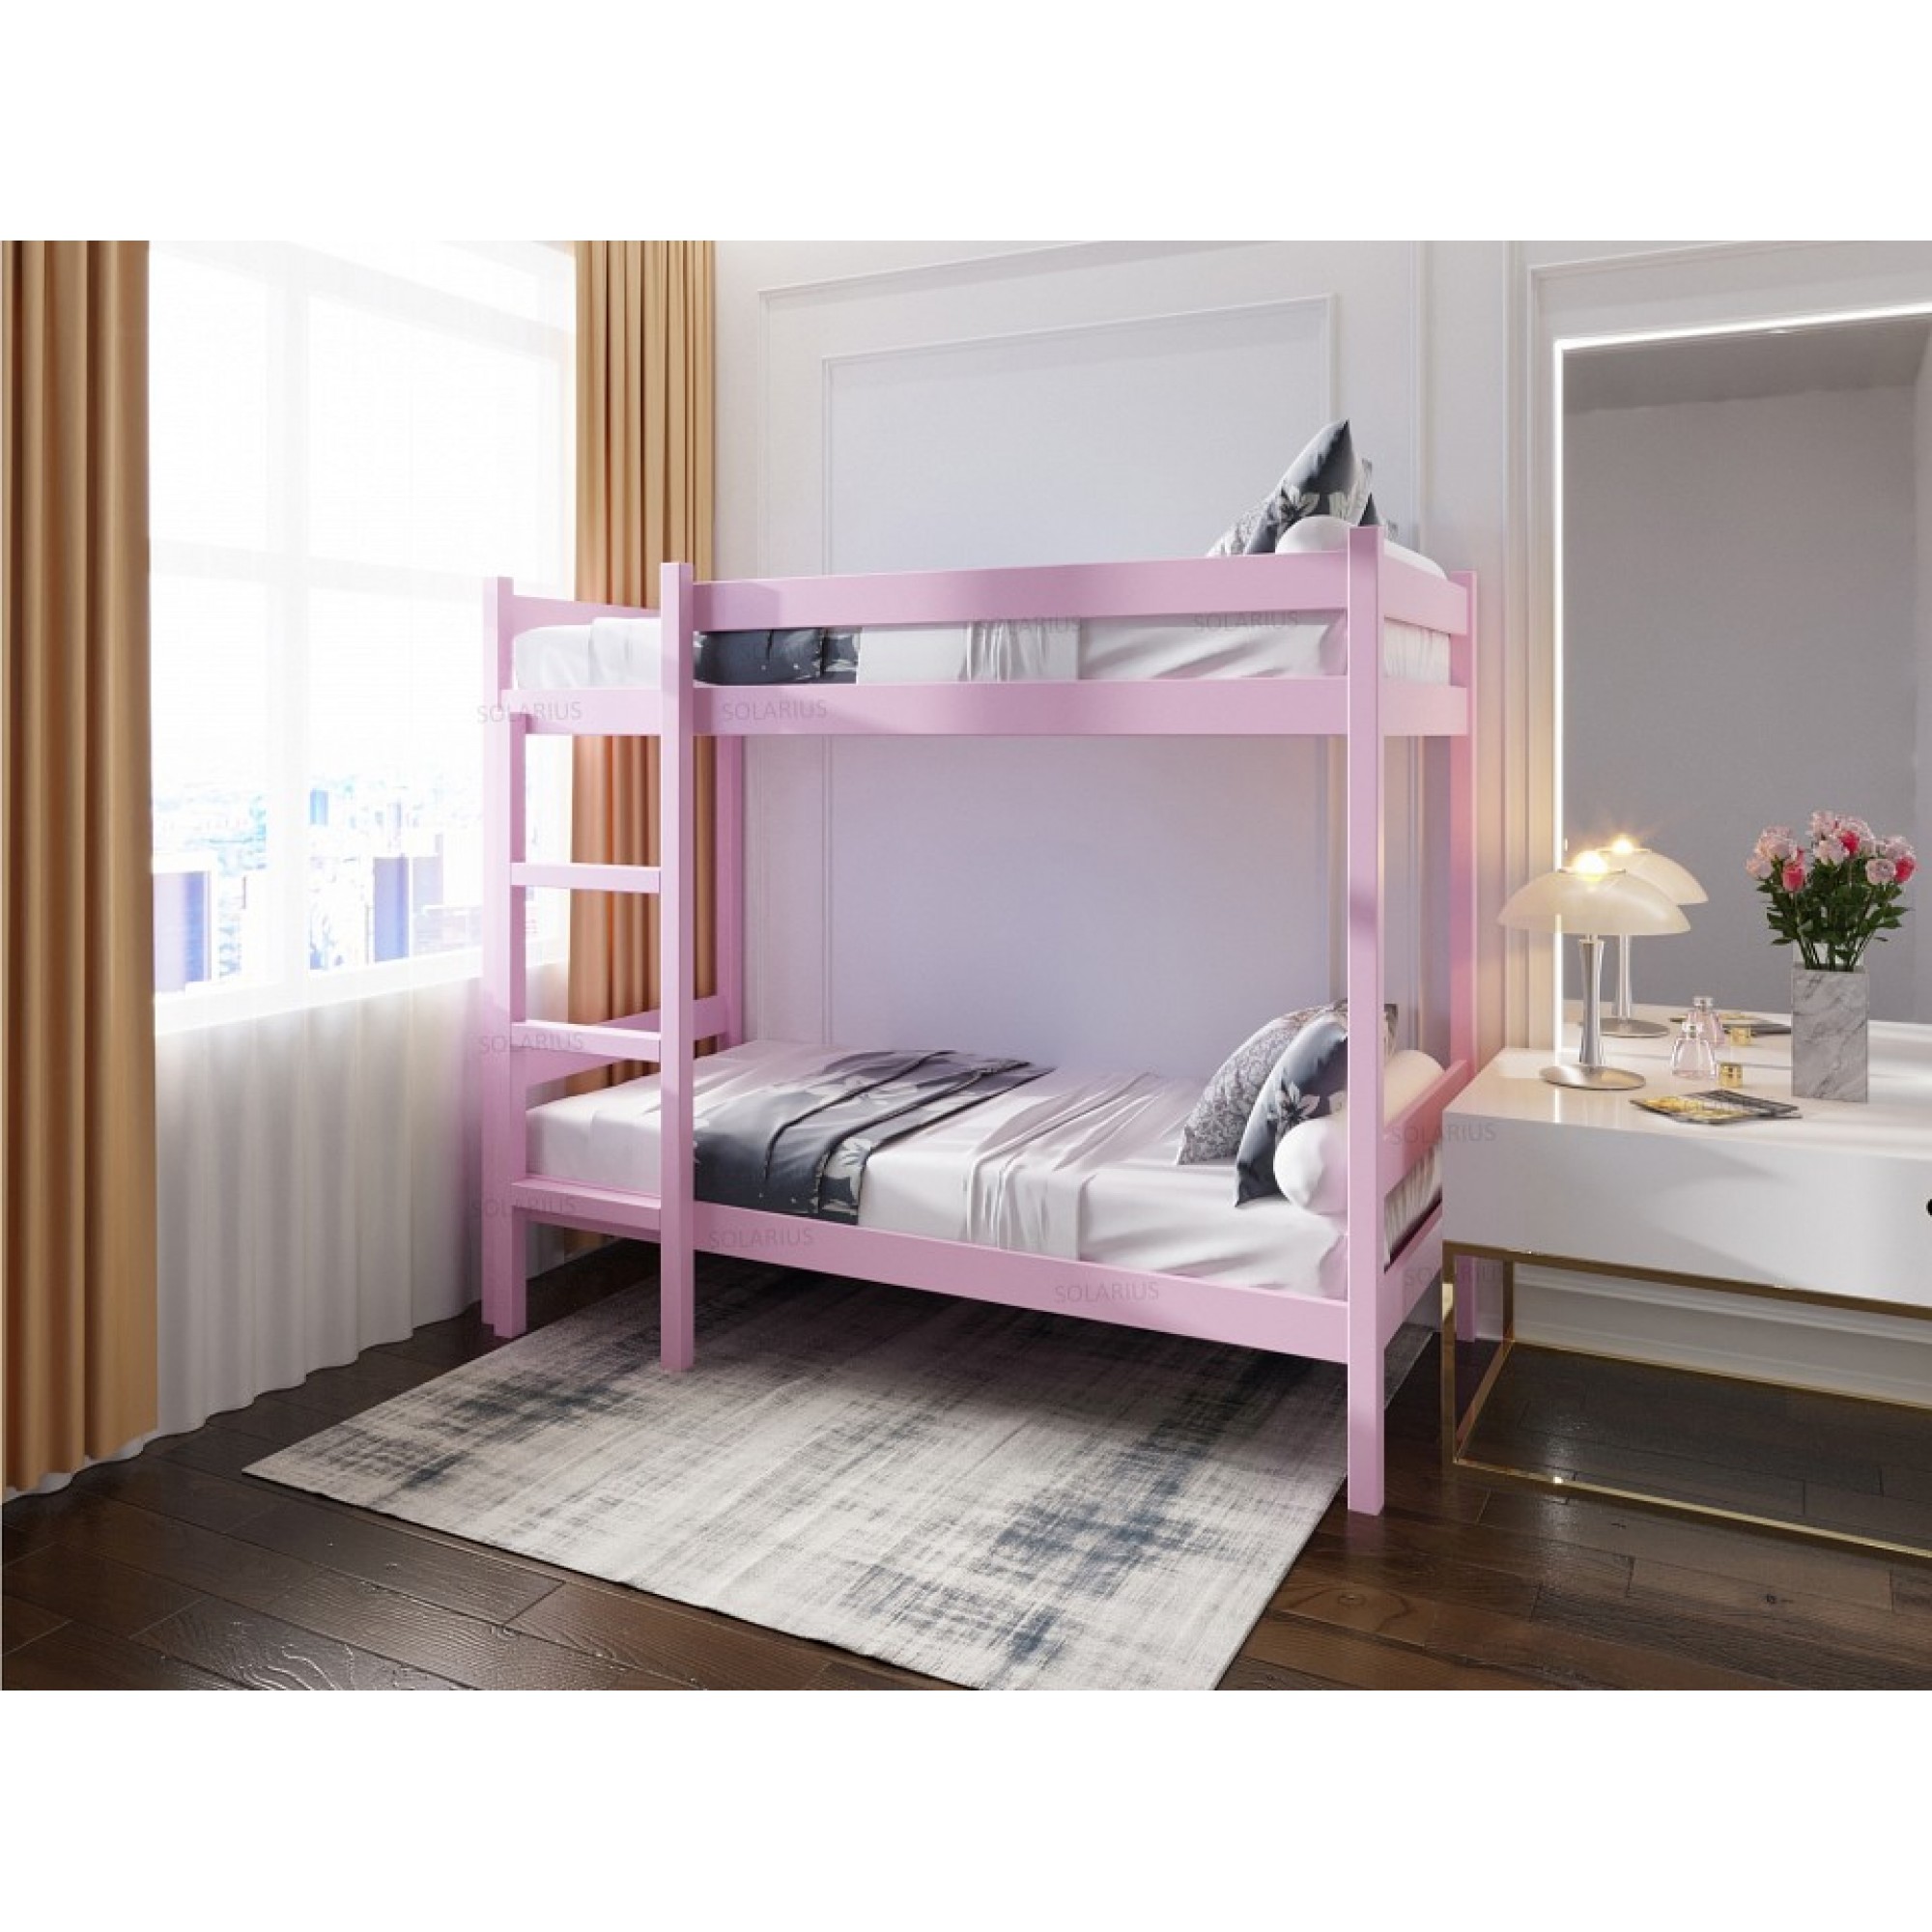 Кровать двухъярусная Solarius 2000x800 розовый    SLR_dvuh80200roz